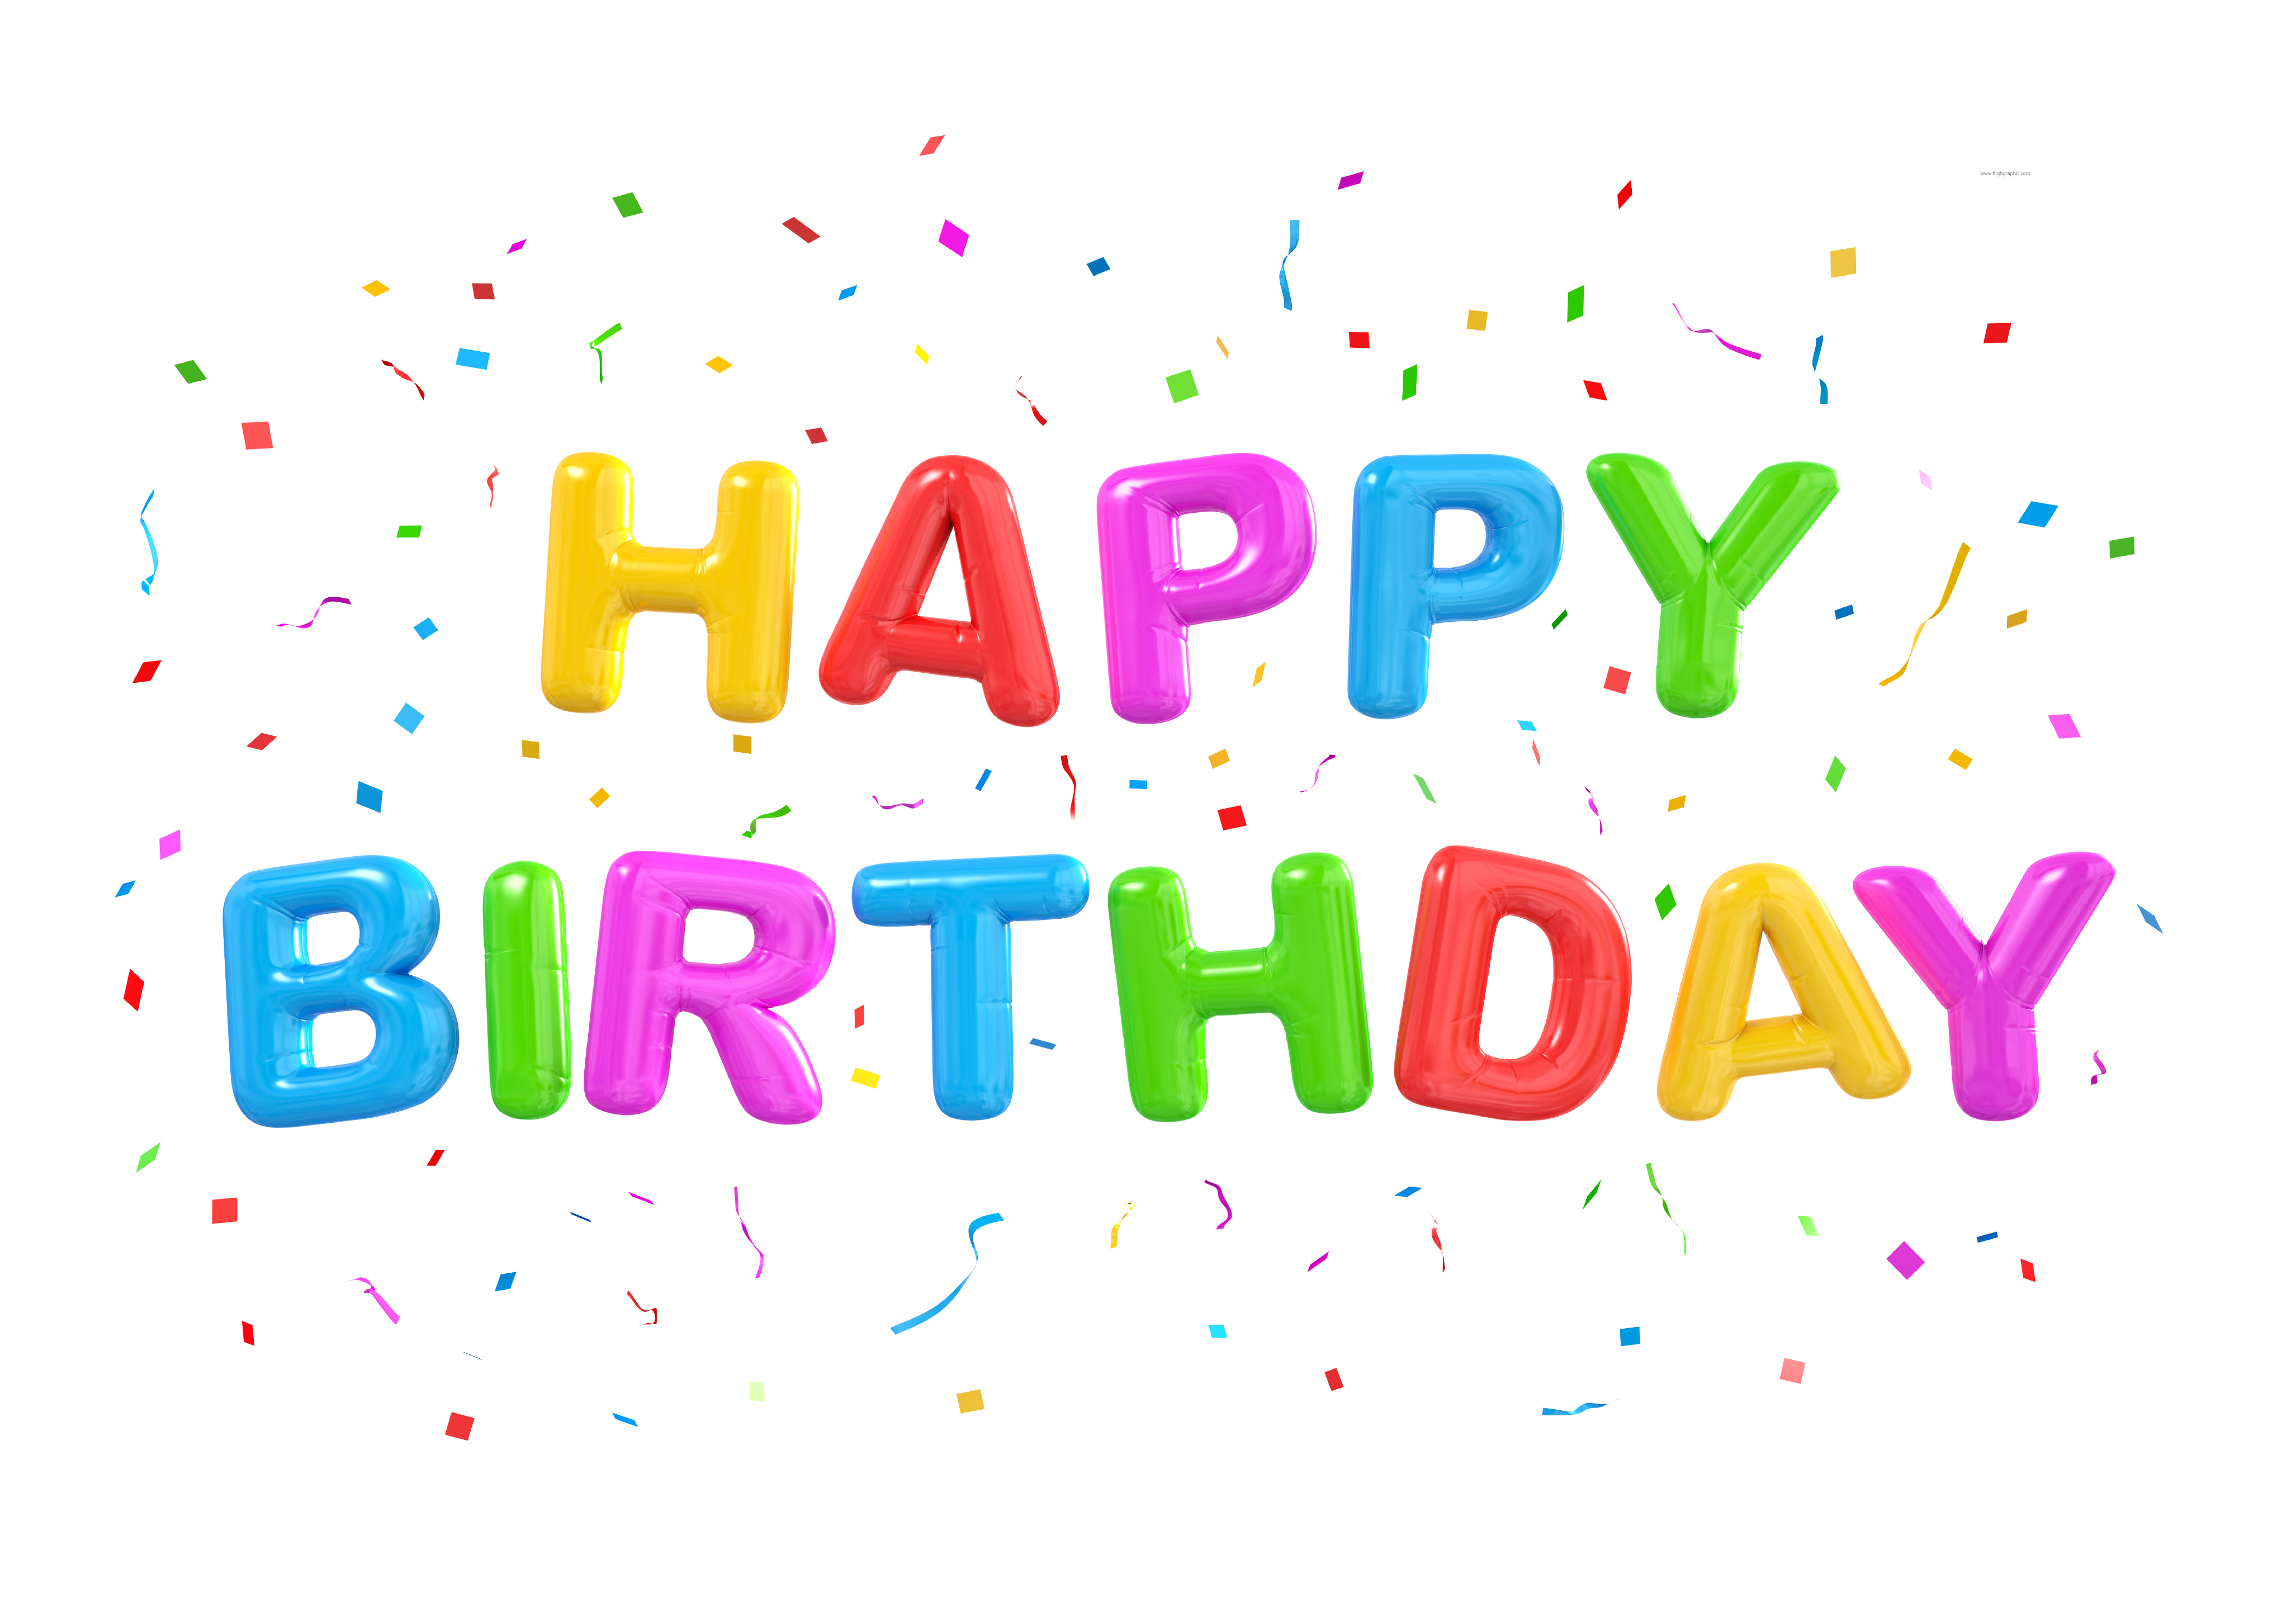 С днем рождения по англ. С днем рождения. Фон для надписи с днем рождения. Красочная надпись с днем рождения. Разноцветная надпись с днем рождения.